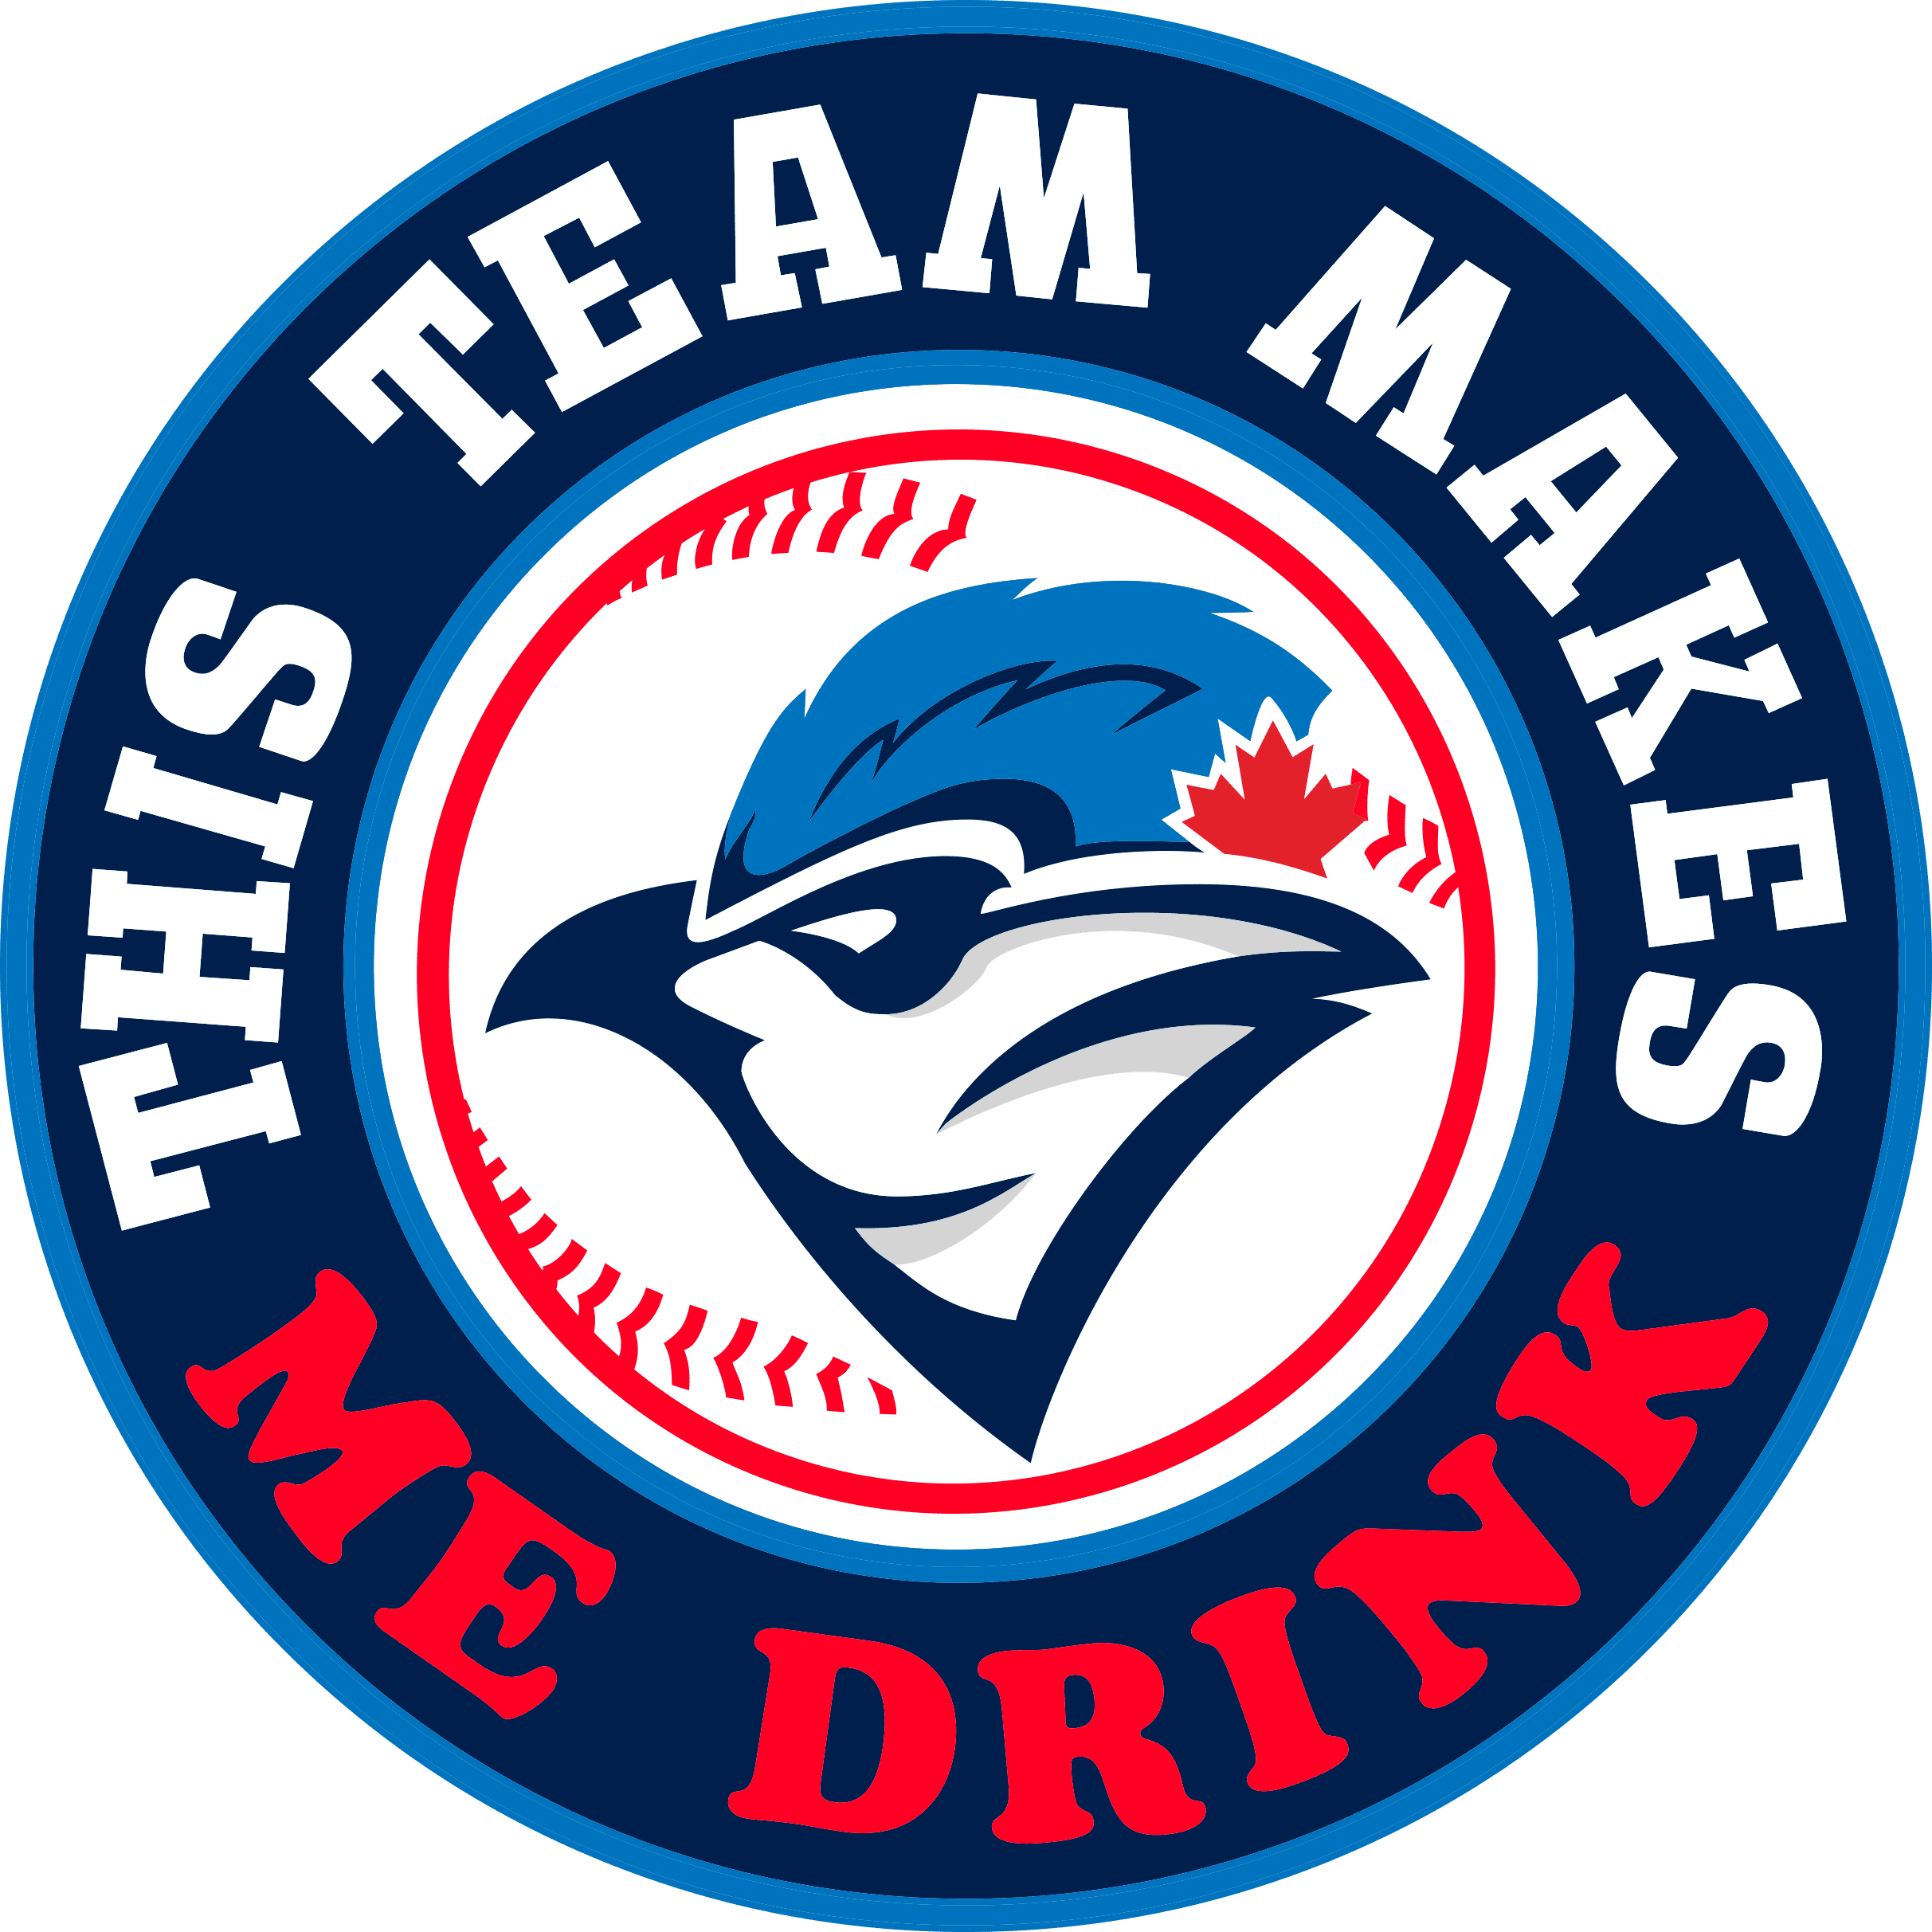 MLB Toronto Blue Jays SVG, SVG Files For Silhouette, Toronto Blue Jays  Files For Cricut, Toronto Blue Jays SVG, DXF, EPS, PNG Instant Download. Toronto  Blue Jays SVG, SVG Files For Silhouette